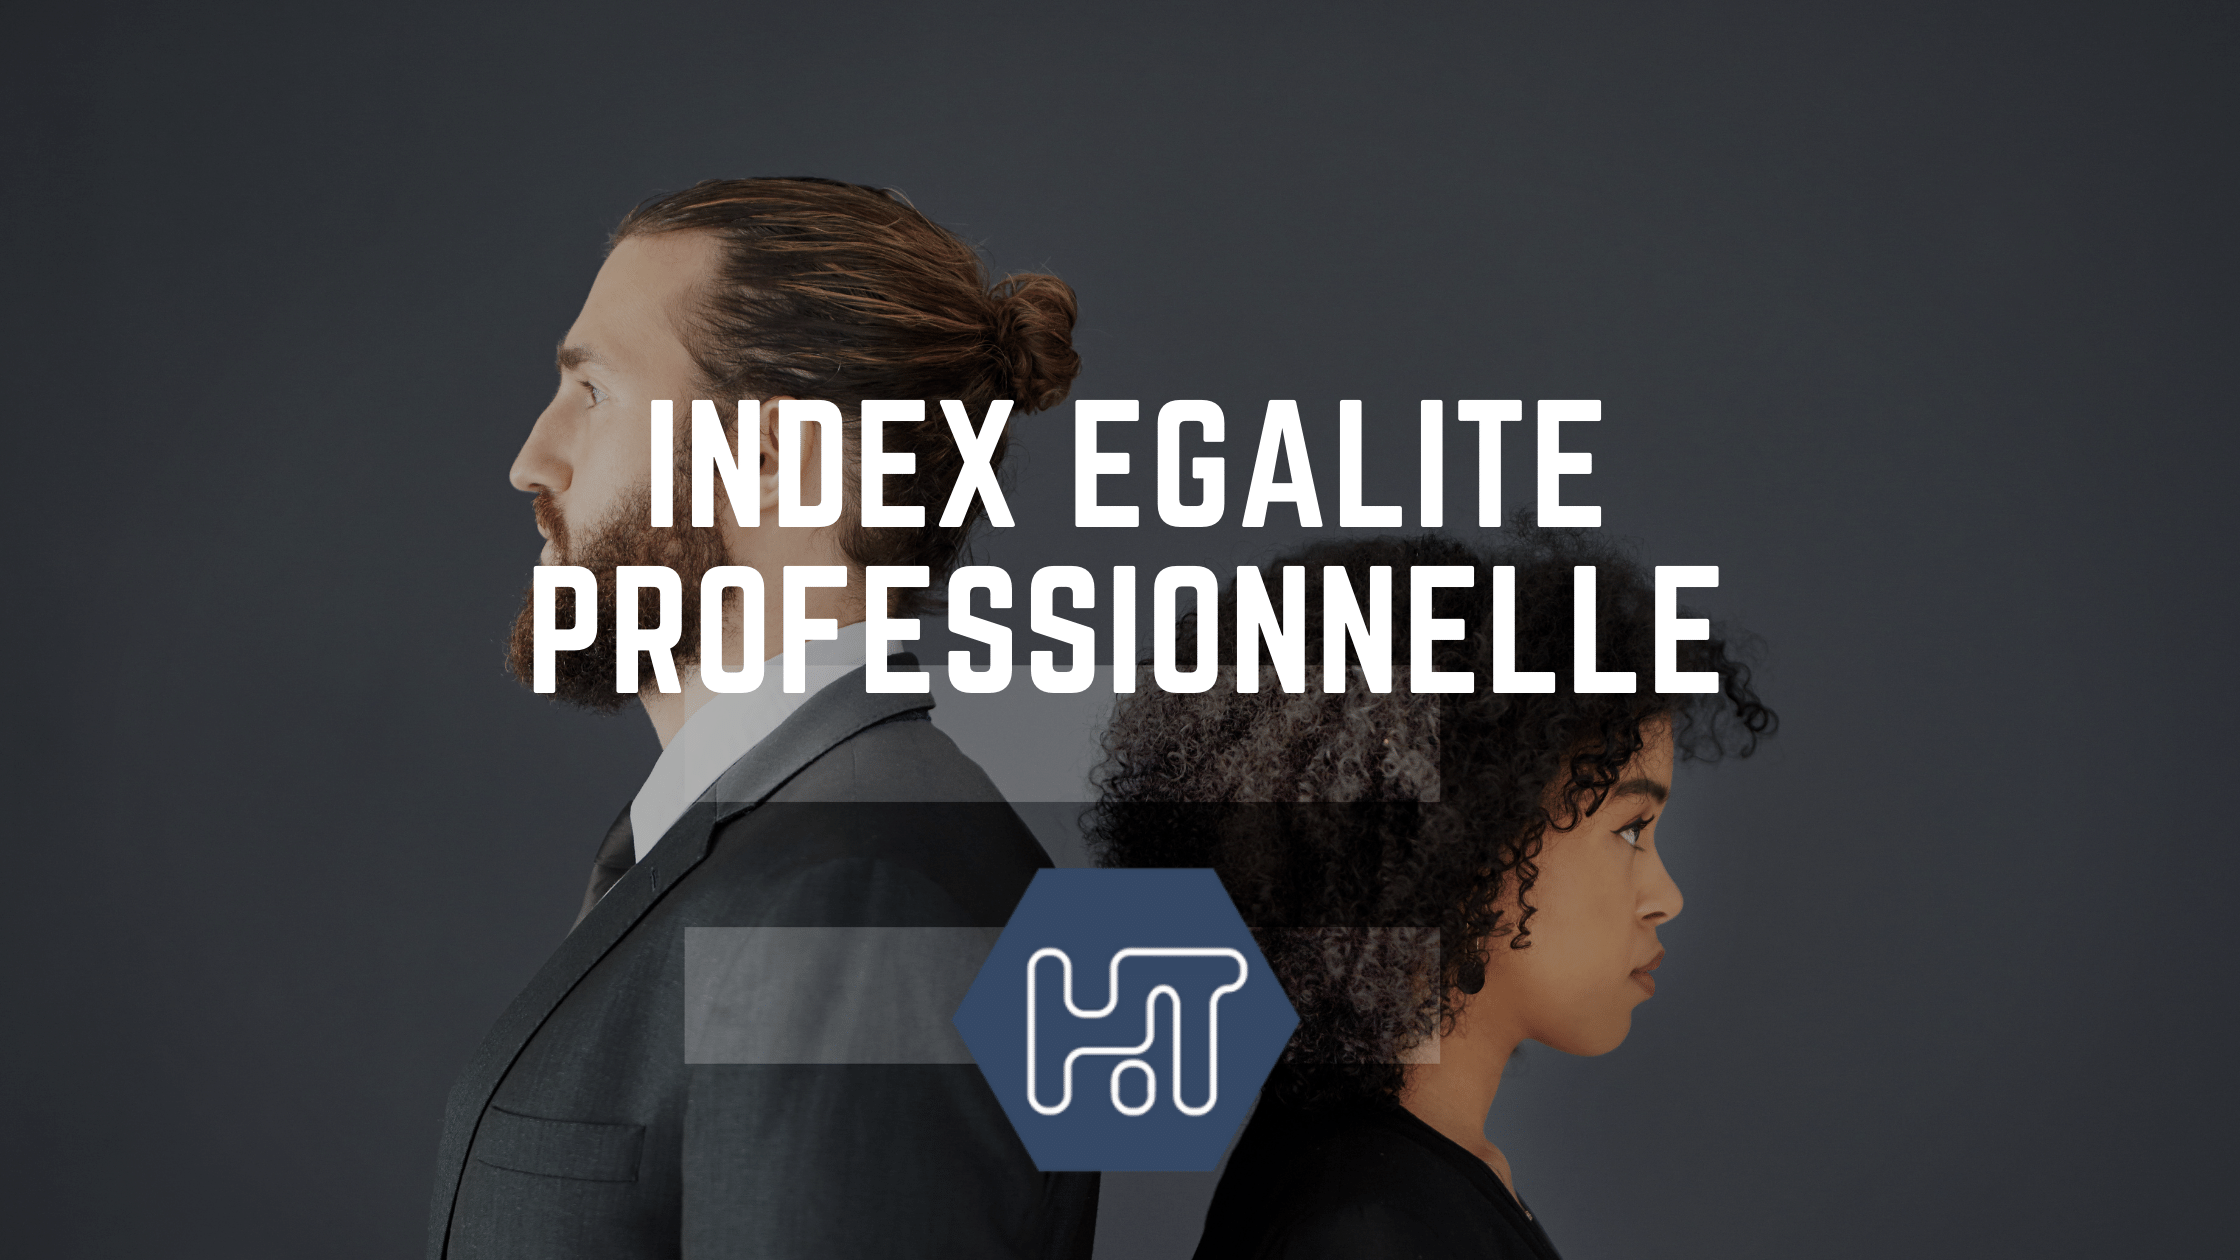 Index égalité professionnelle entre les femmes et les hommes